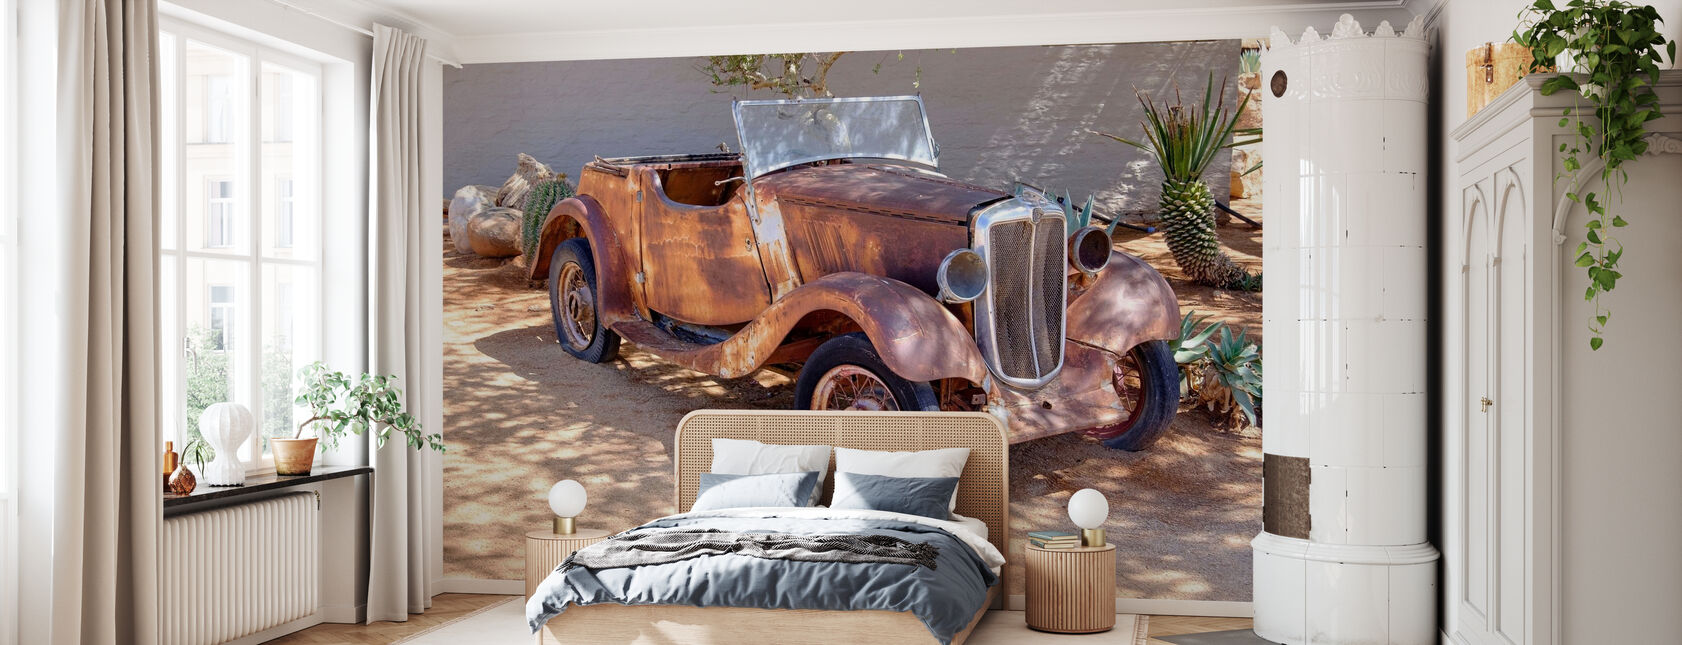 Rusty Auto - Behang - Slaapkamer